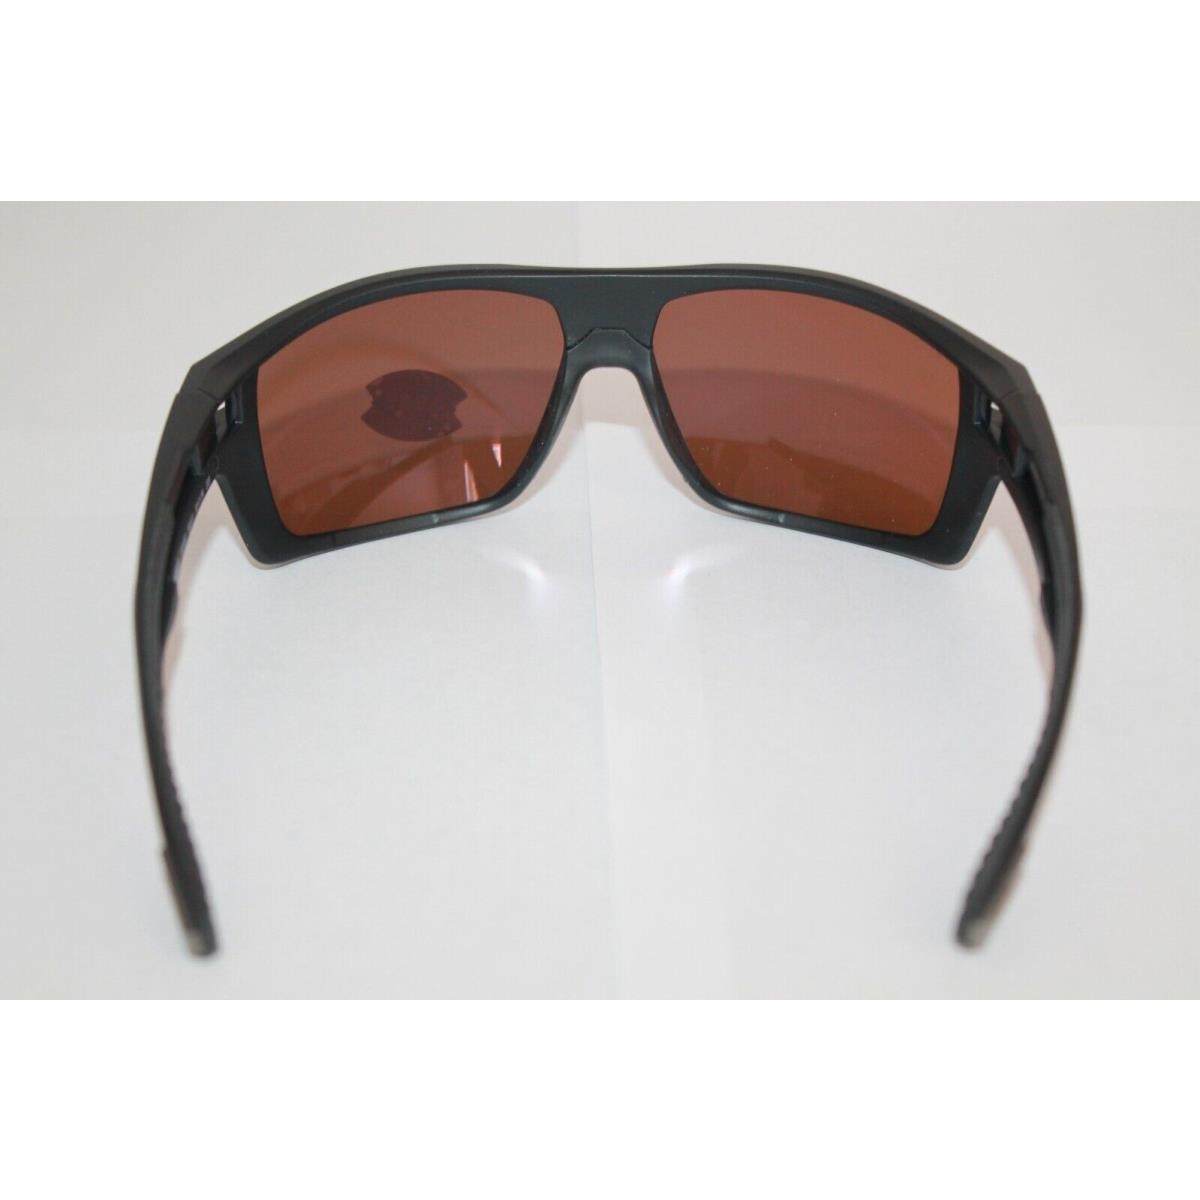 Costa Del Mar sunglasses Diego - Matte Black Frame, Copper Silver Mirror POLARIZED Lens